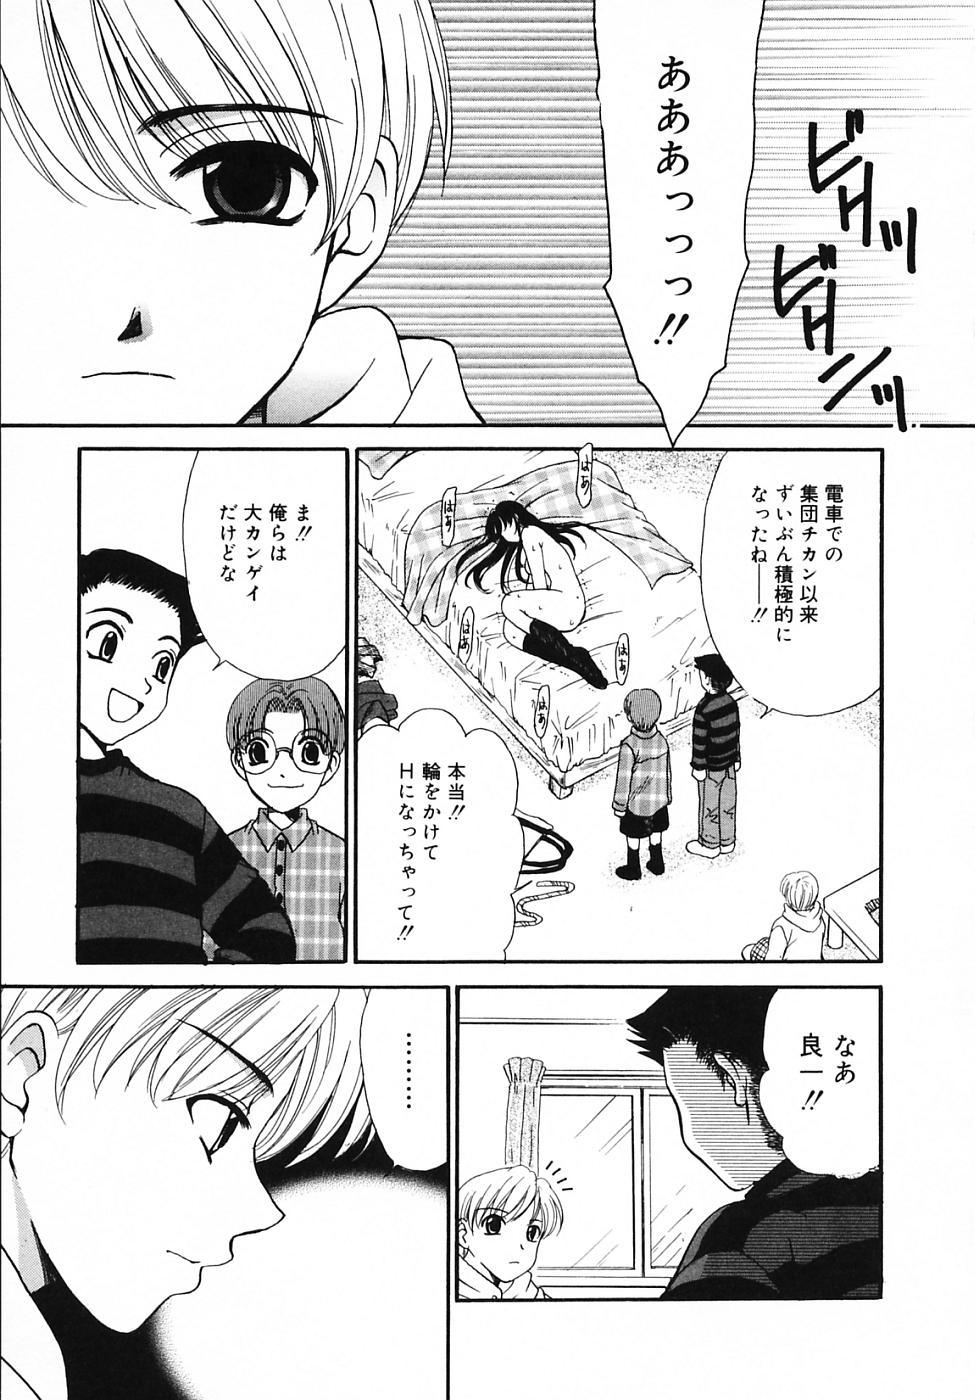 Dildo Kodomo no Jikan Vol.03 Homemade - Page 9